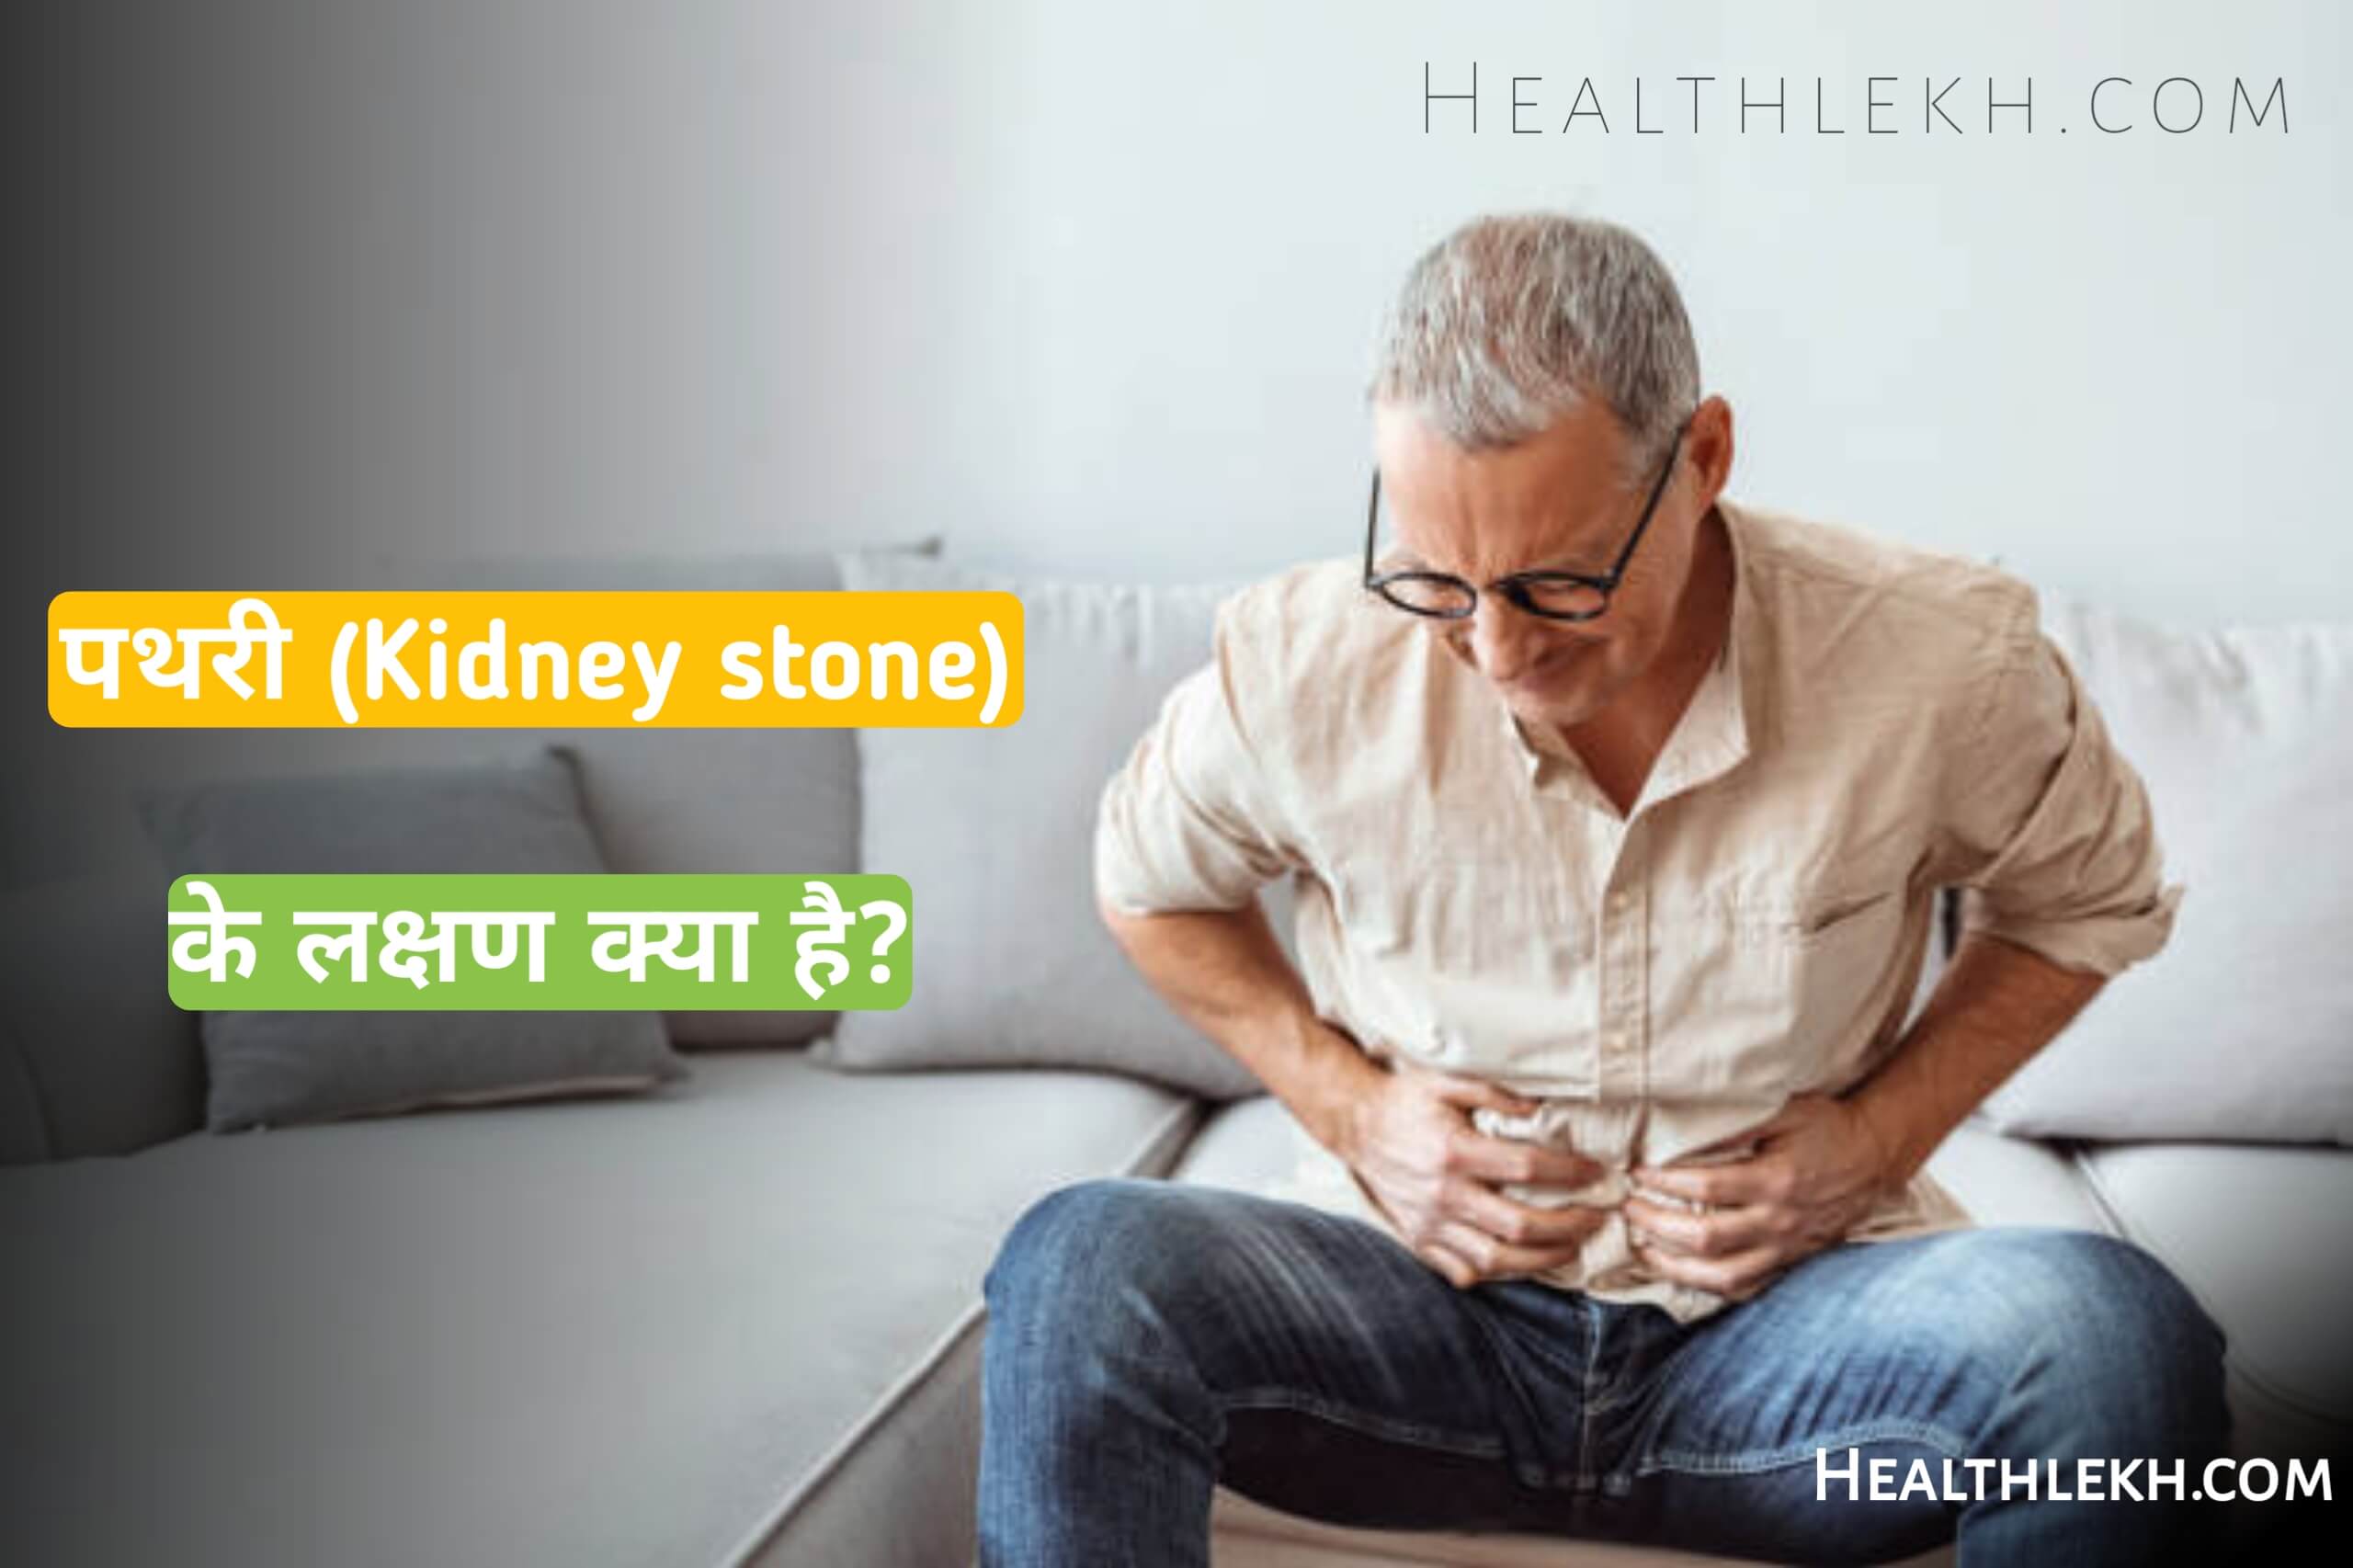 How to Treat Kidney stone in Hindi,पथरी का इलाज कैसे करे,फिटकरी से पथरी का इलाज,pathri ka ilaj kaise kare,pathri ka ilaj gharelu upay kya hai